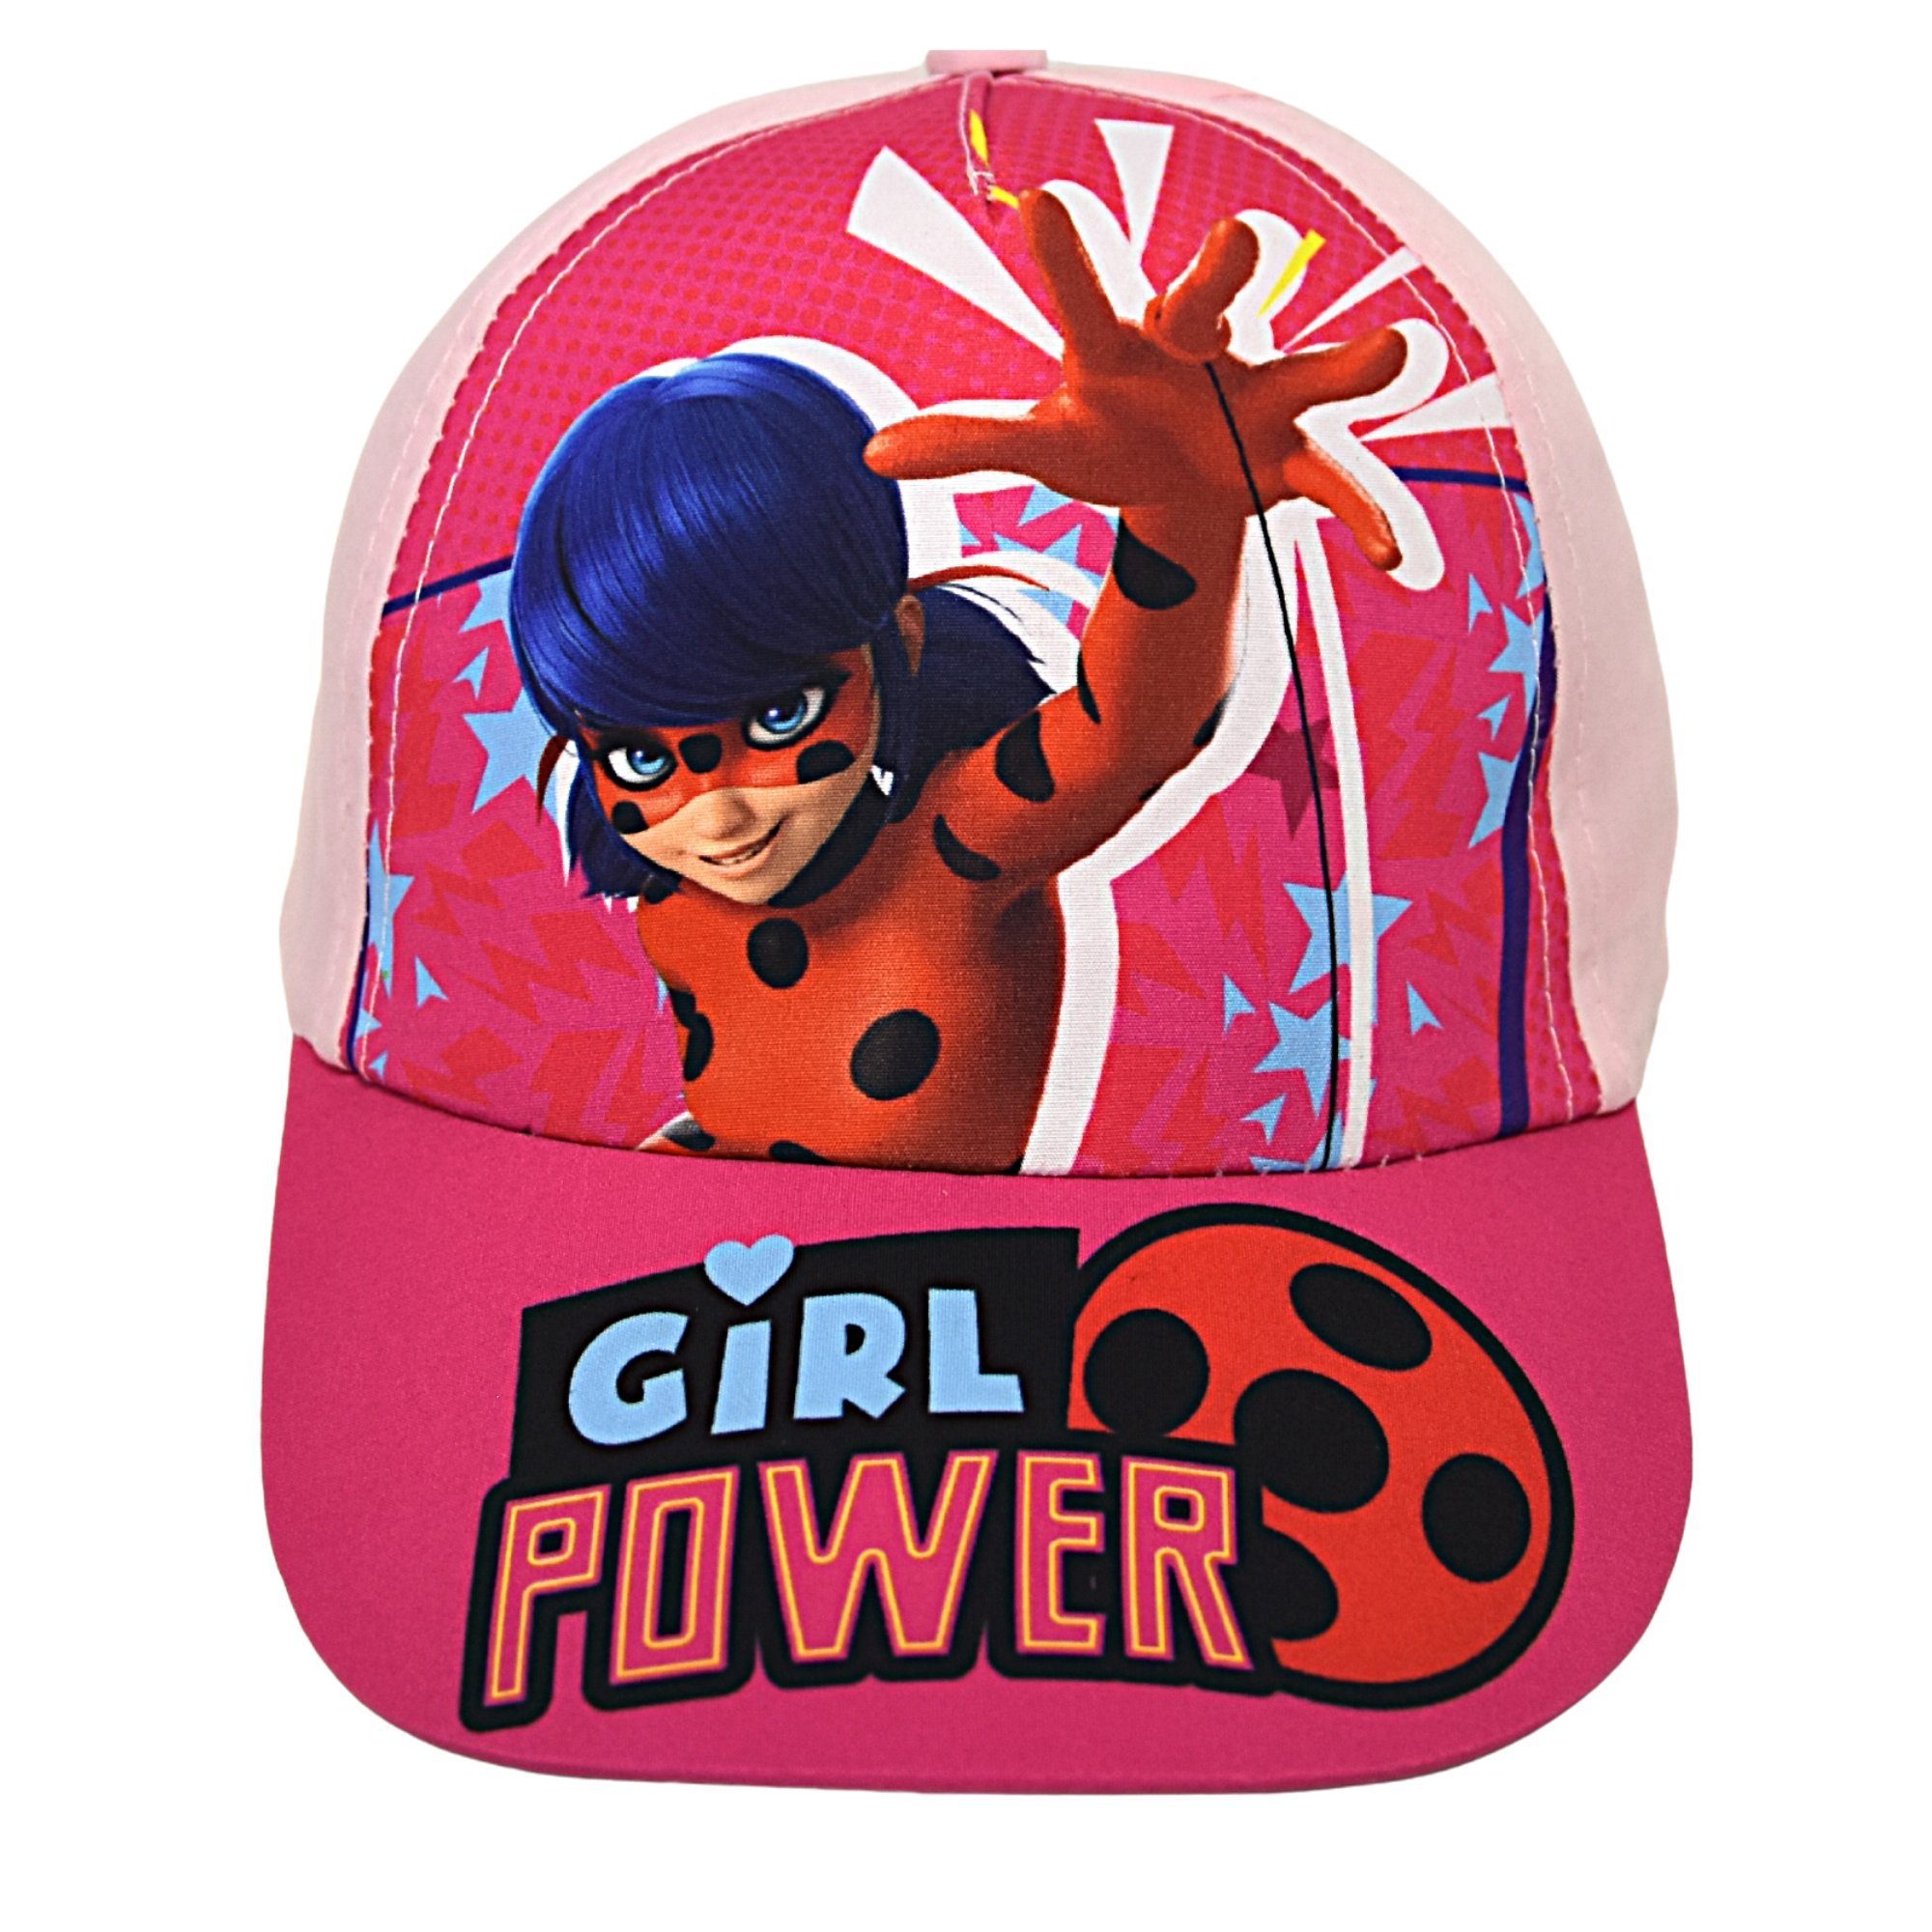 Miraculous - Ladybug Baseball Cap Girl Power Sommerkappe Größe 52-54 cm Rosa